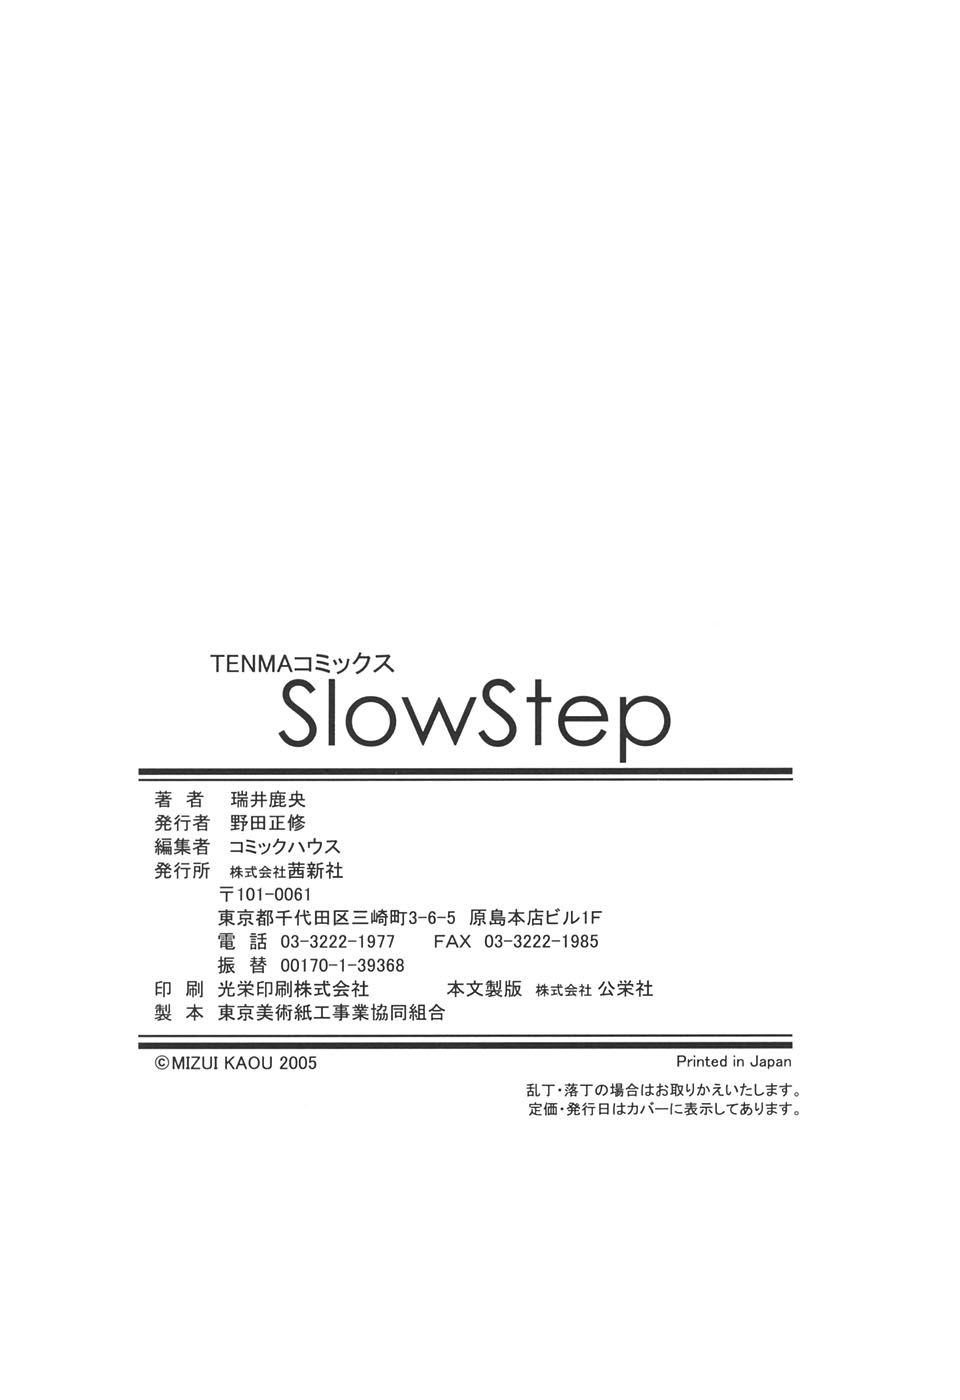 [瑞井鹿央] SlowStep